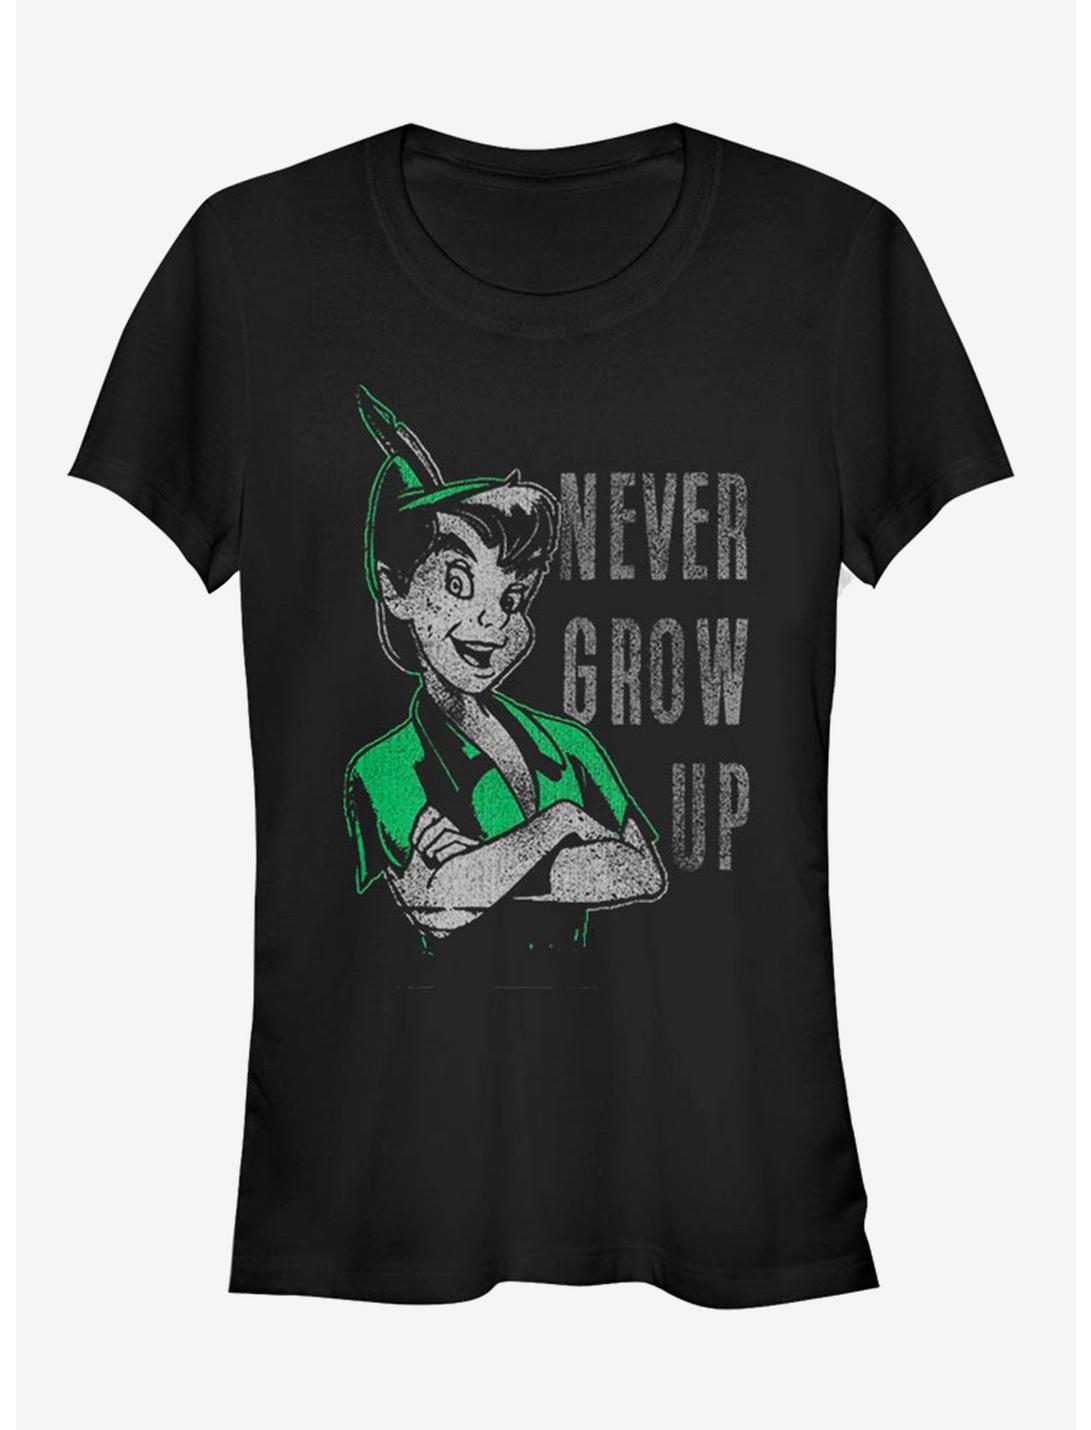 Disney Never Grow Up Girls T-Shirt, BLACK, hi-res